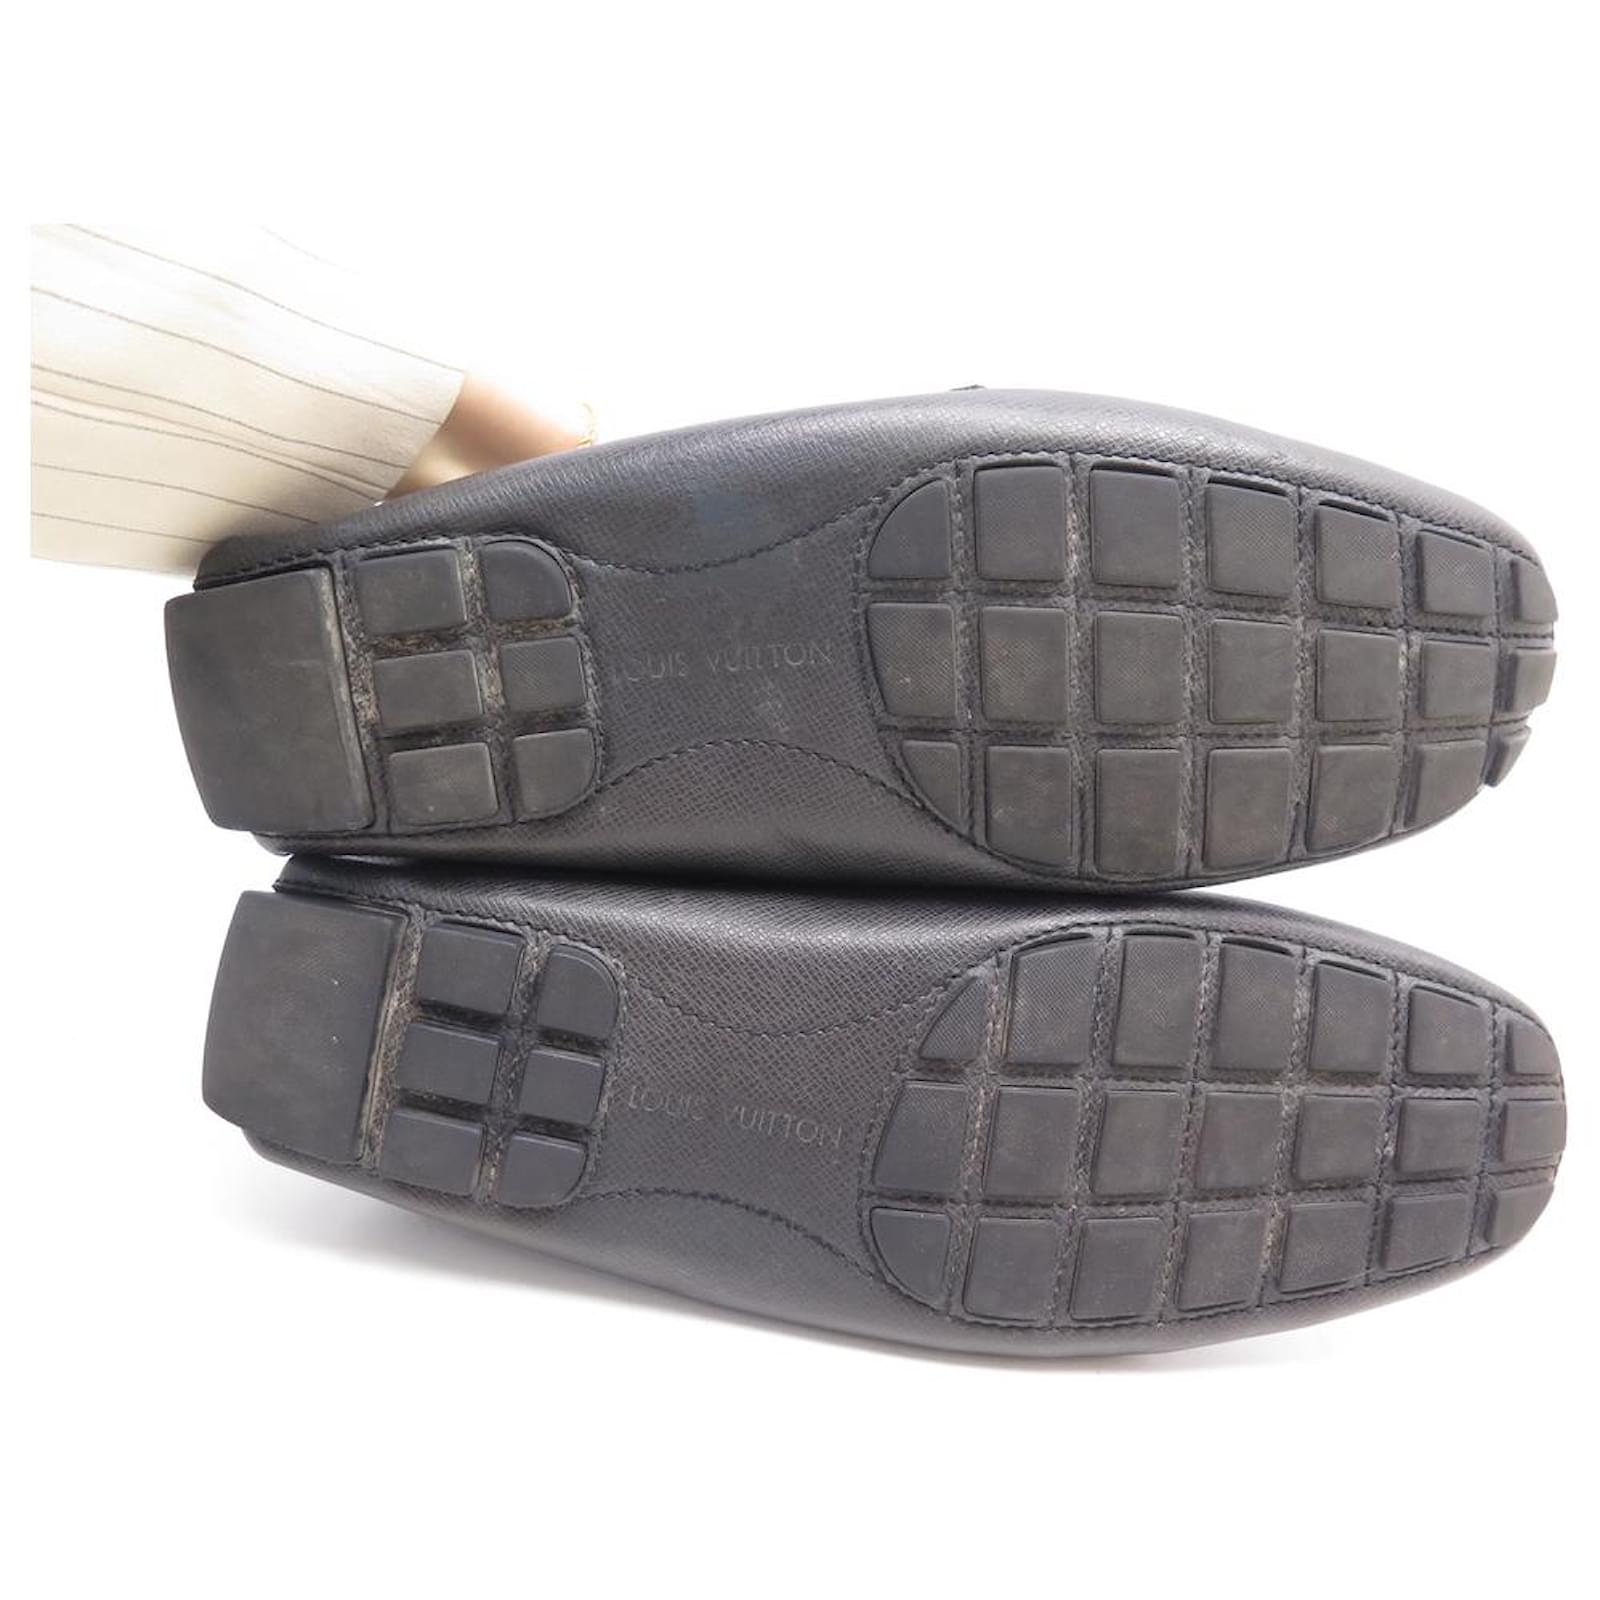 Louis Vuitton Black Epi Leather Major Loafers Size 47 Louis Vuitton